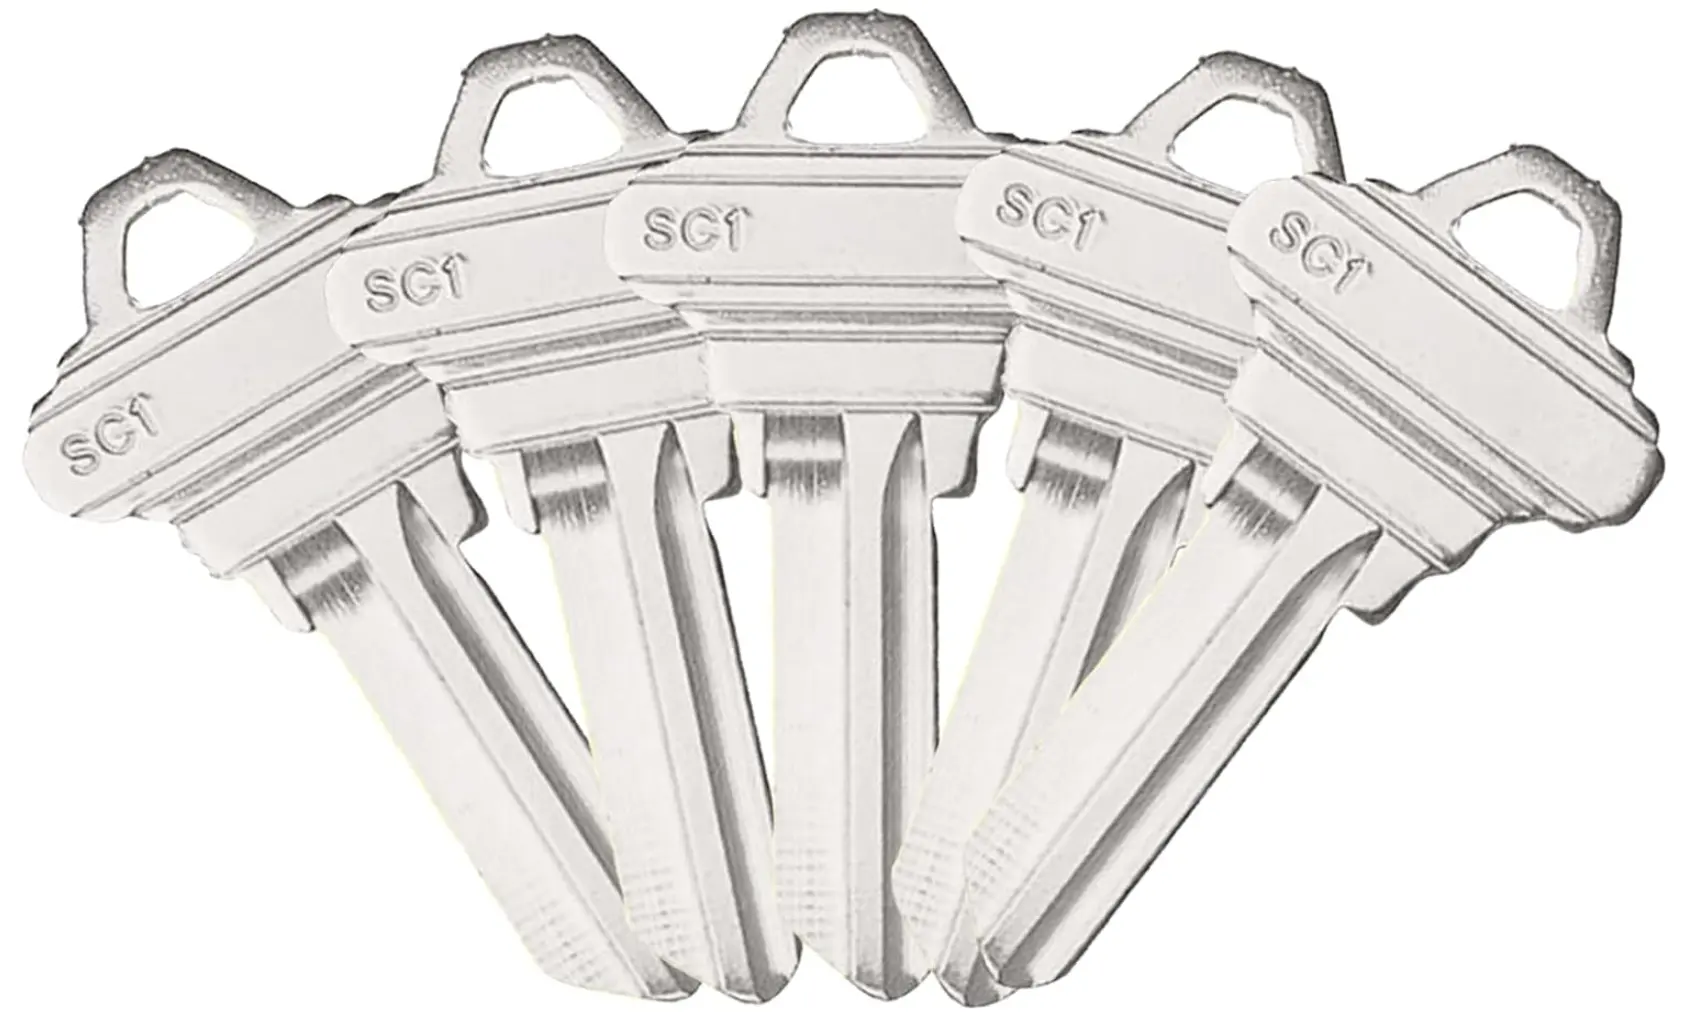 SC1 kunci kosong kosong tidak dipotong struktur tembaga kunci kosong untuk duplikat untuk memotong